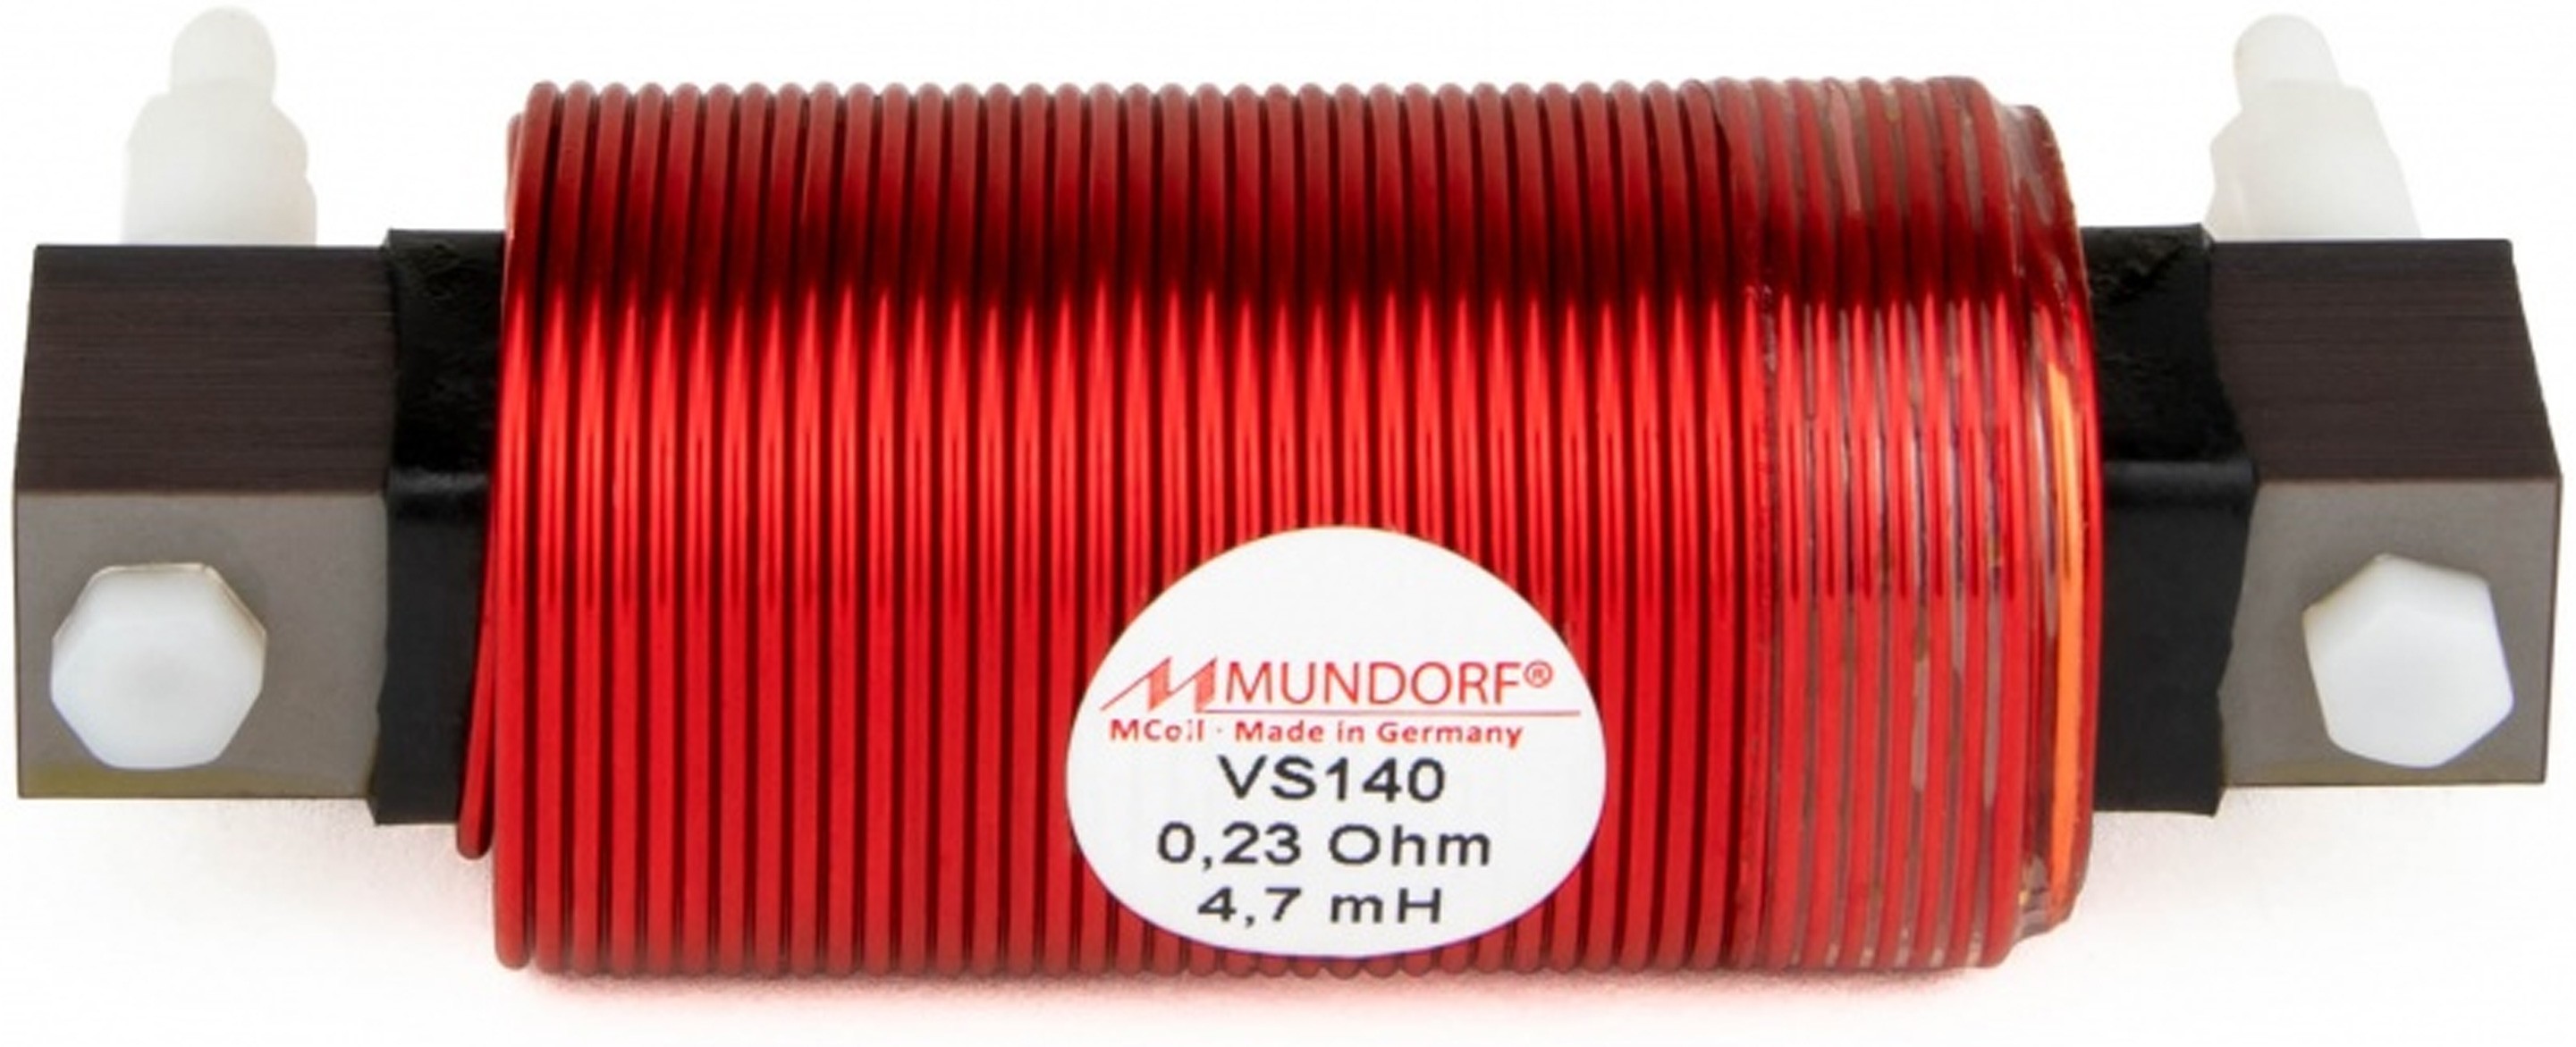 MUNDORF VS140-5.6 MCOIL ICORE Copper Coil Feron Core 5.6mH